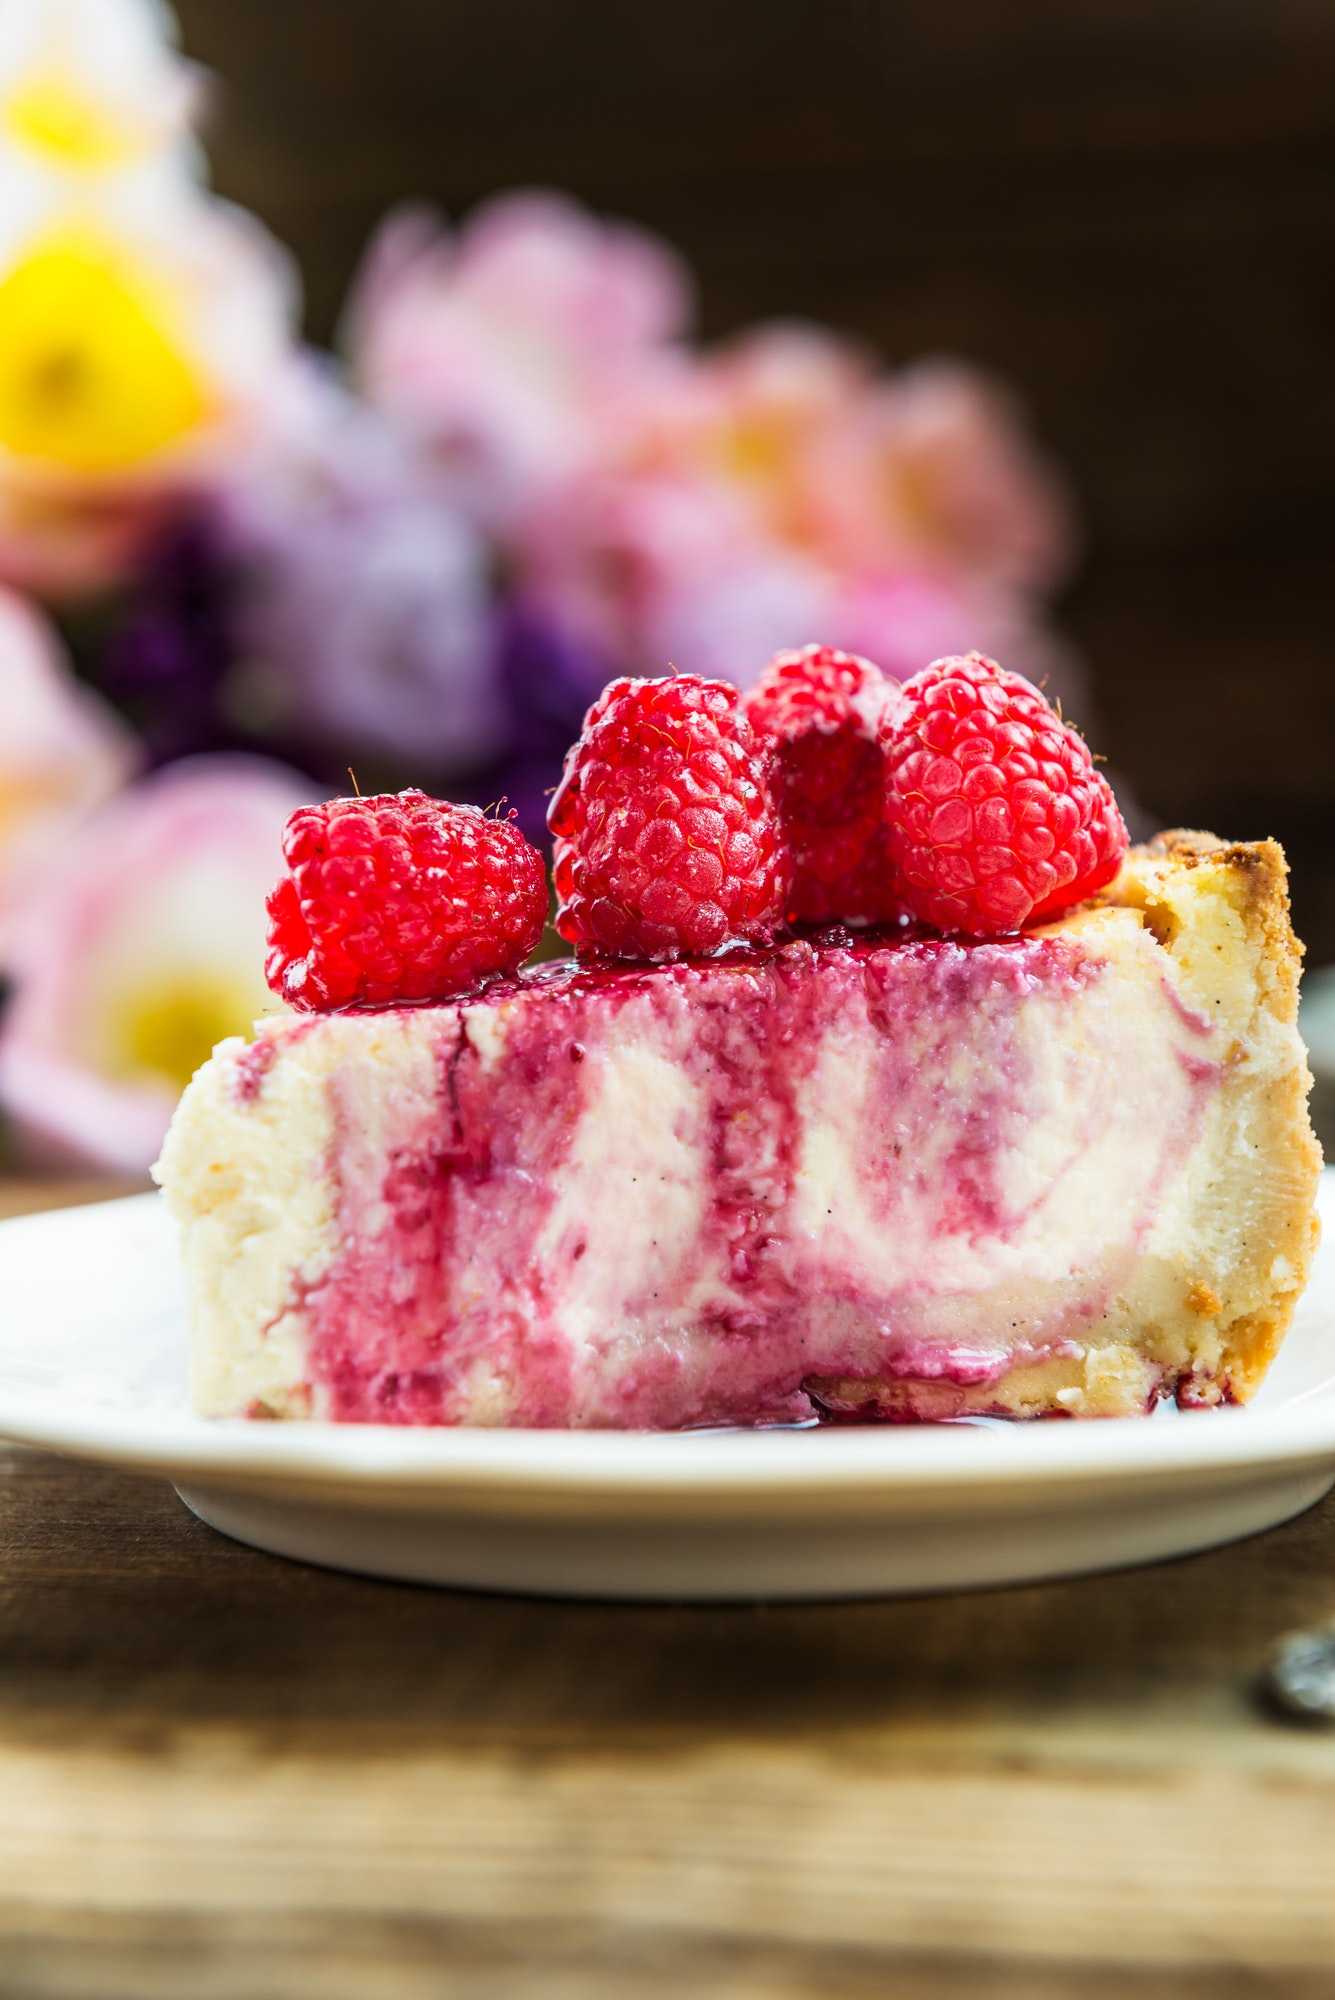 Homemade Vanilla Cheesecake with Raspberries